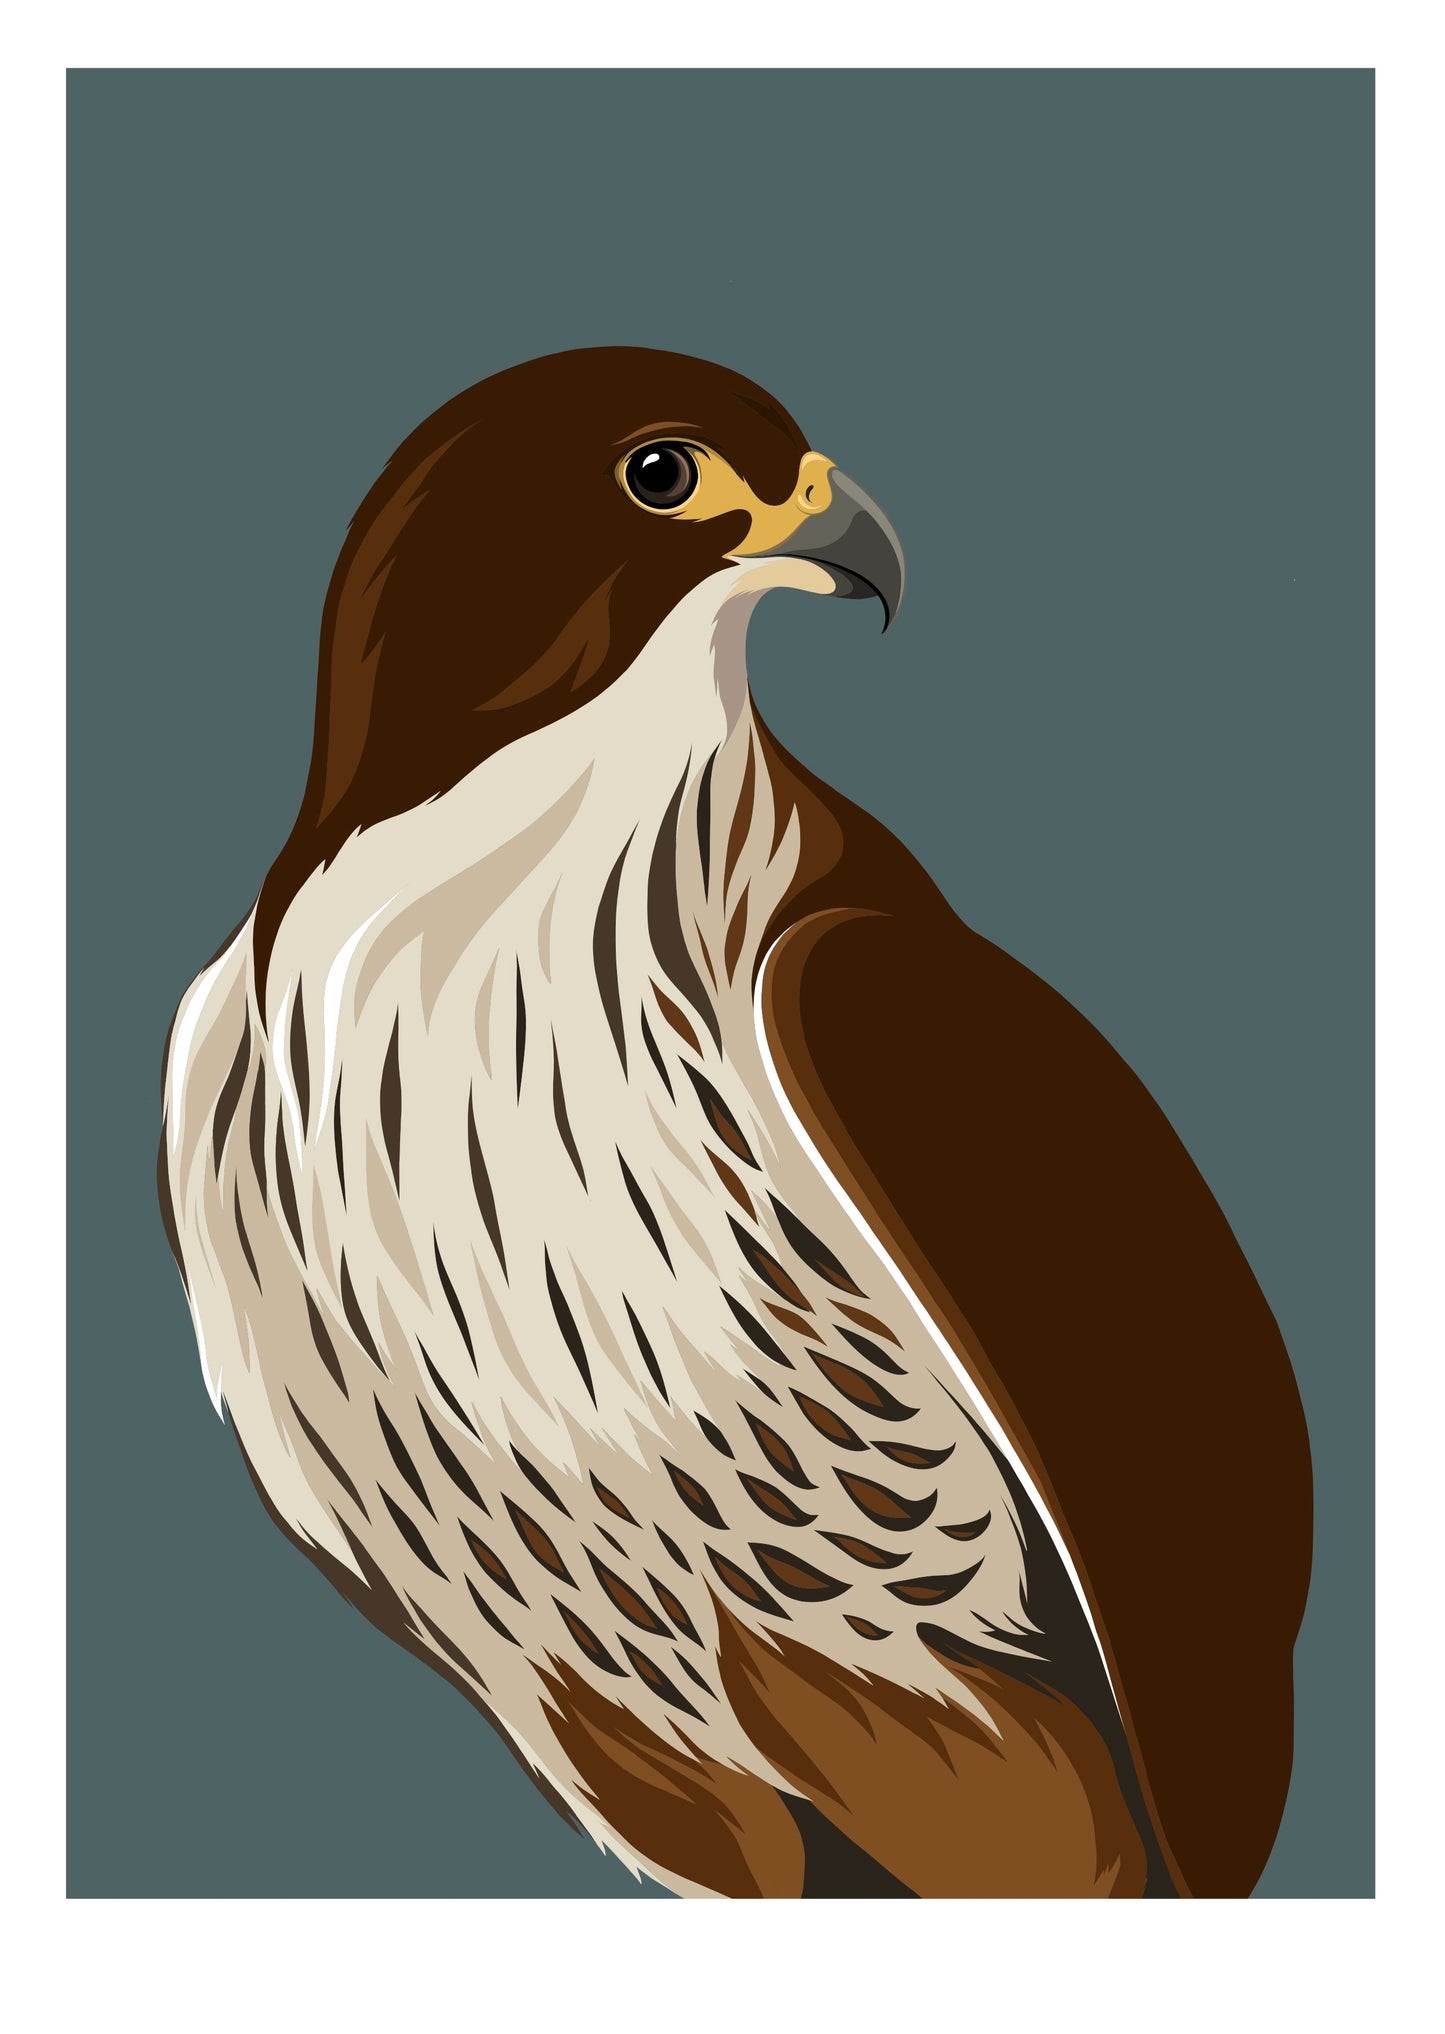 Falcon / Kārearea dusk art print by New Zealand artist Hansby Design